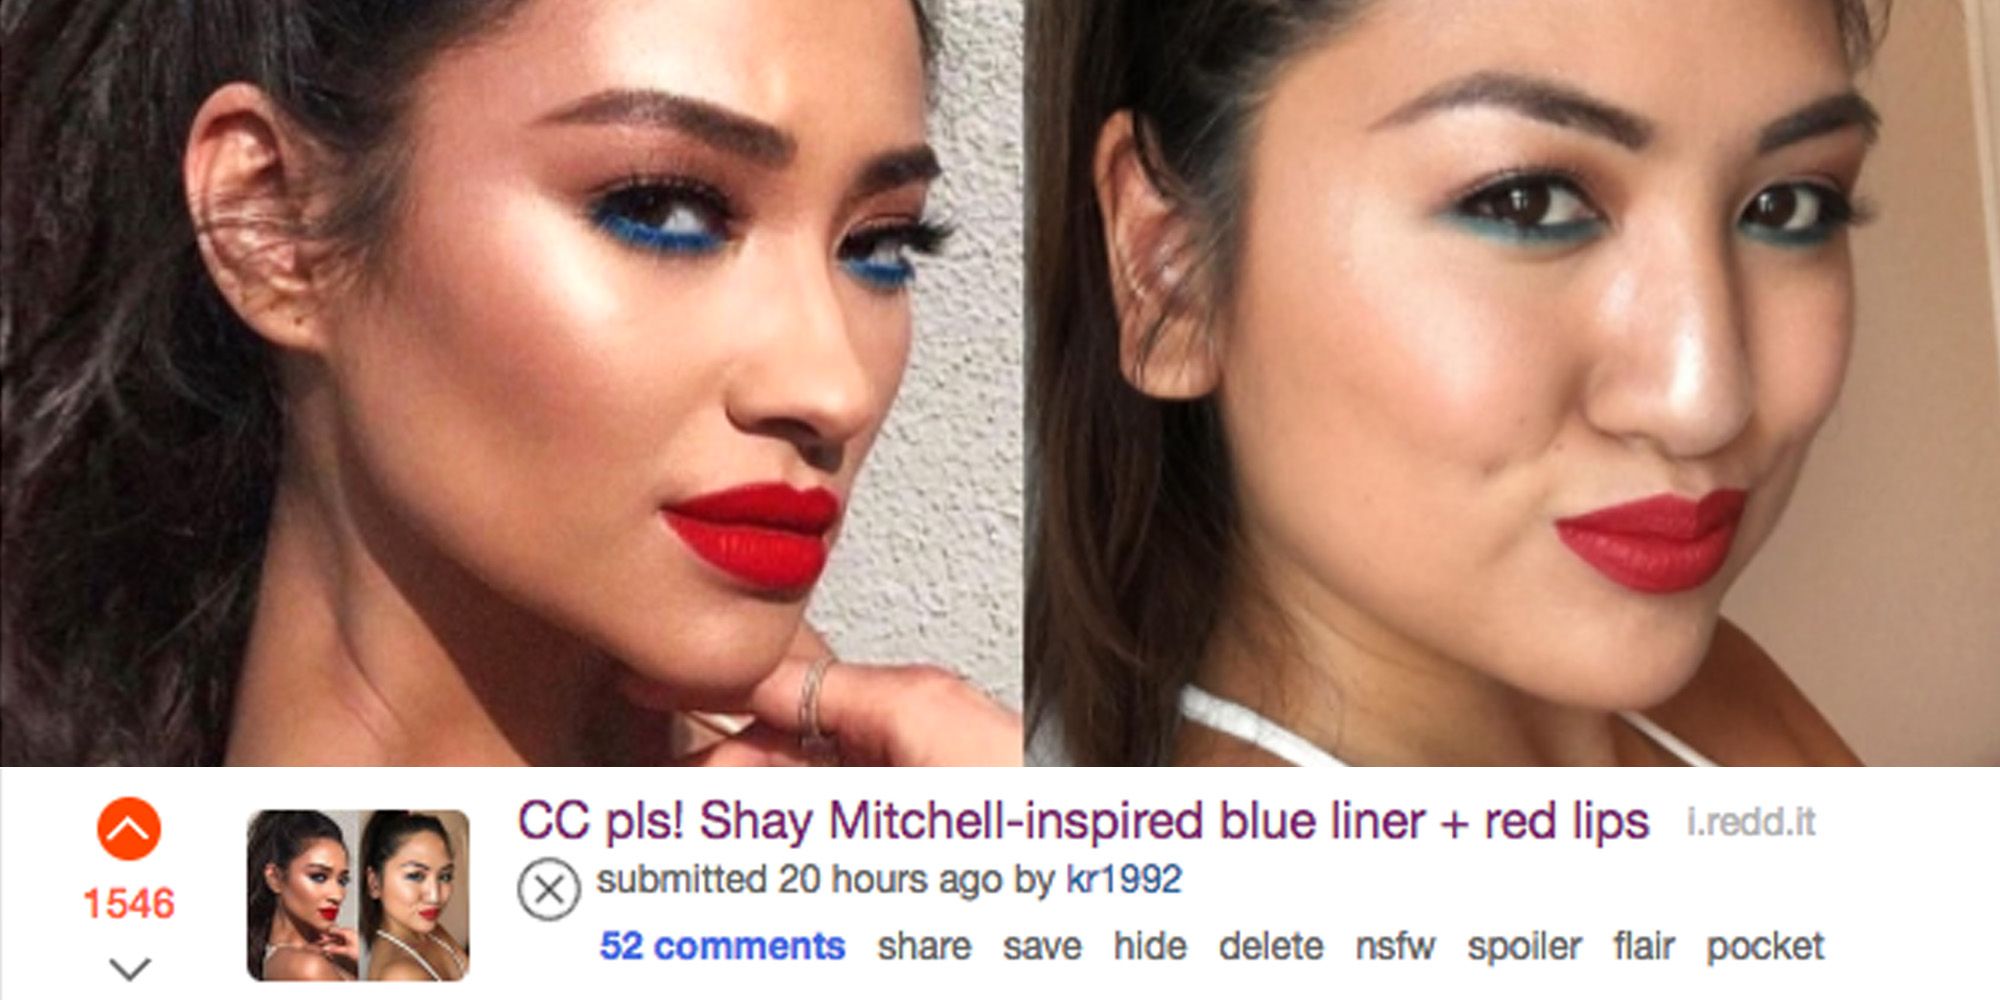 flydende Biskop Frugtgrøntsager I Let Reddit Critique My Makeup - Makeup Addiction Reddit Beauty Tips